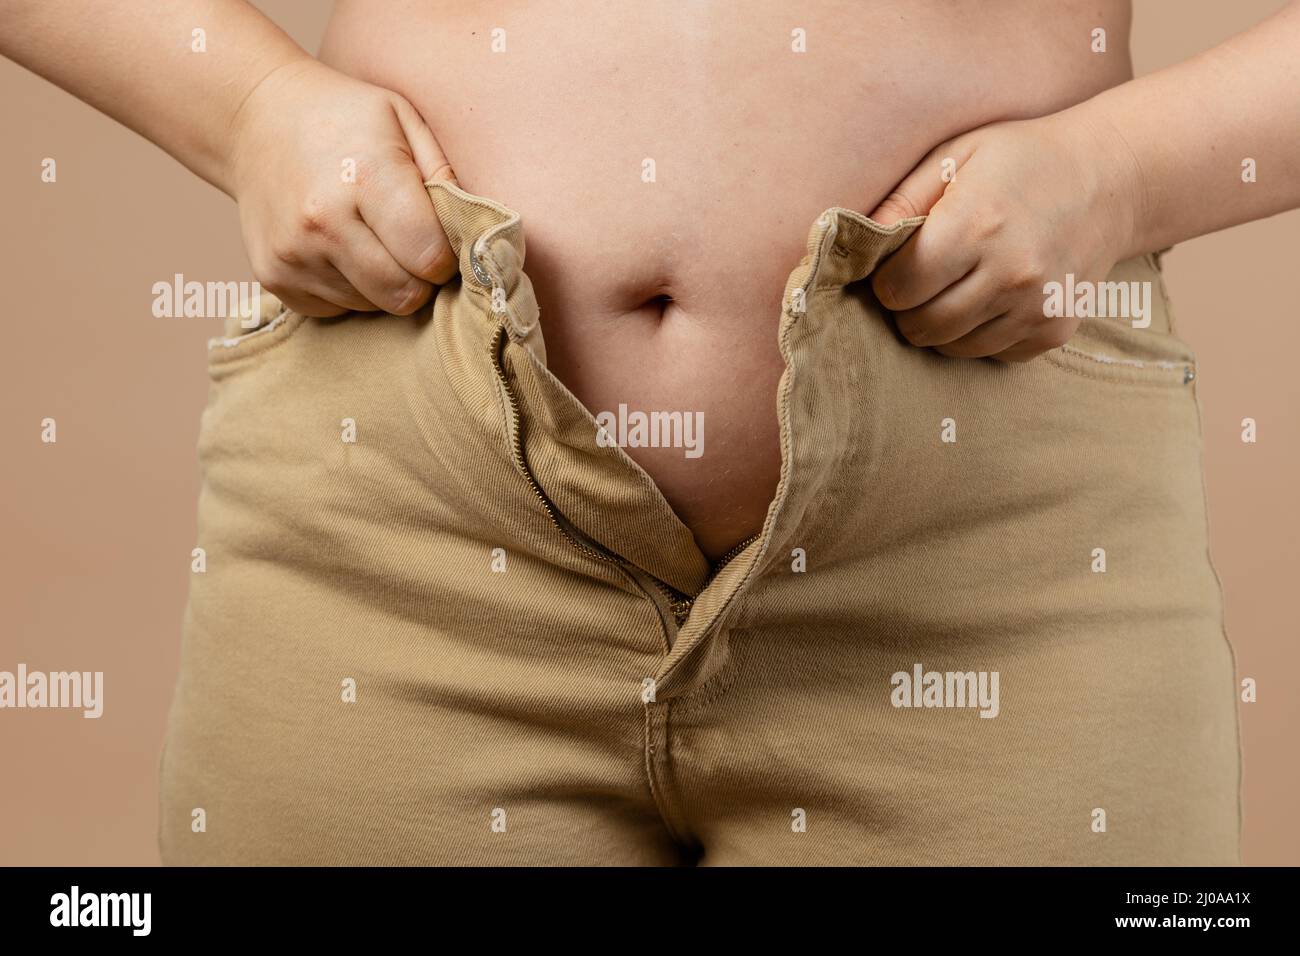 Frau schlaff großen Bauch verhindert, dass sie Jeans auf beige Hintergrund. Viszerales Fett. Körper positiv. Plötzliche Gewichtszunahme. Wenig eng Stockfoto